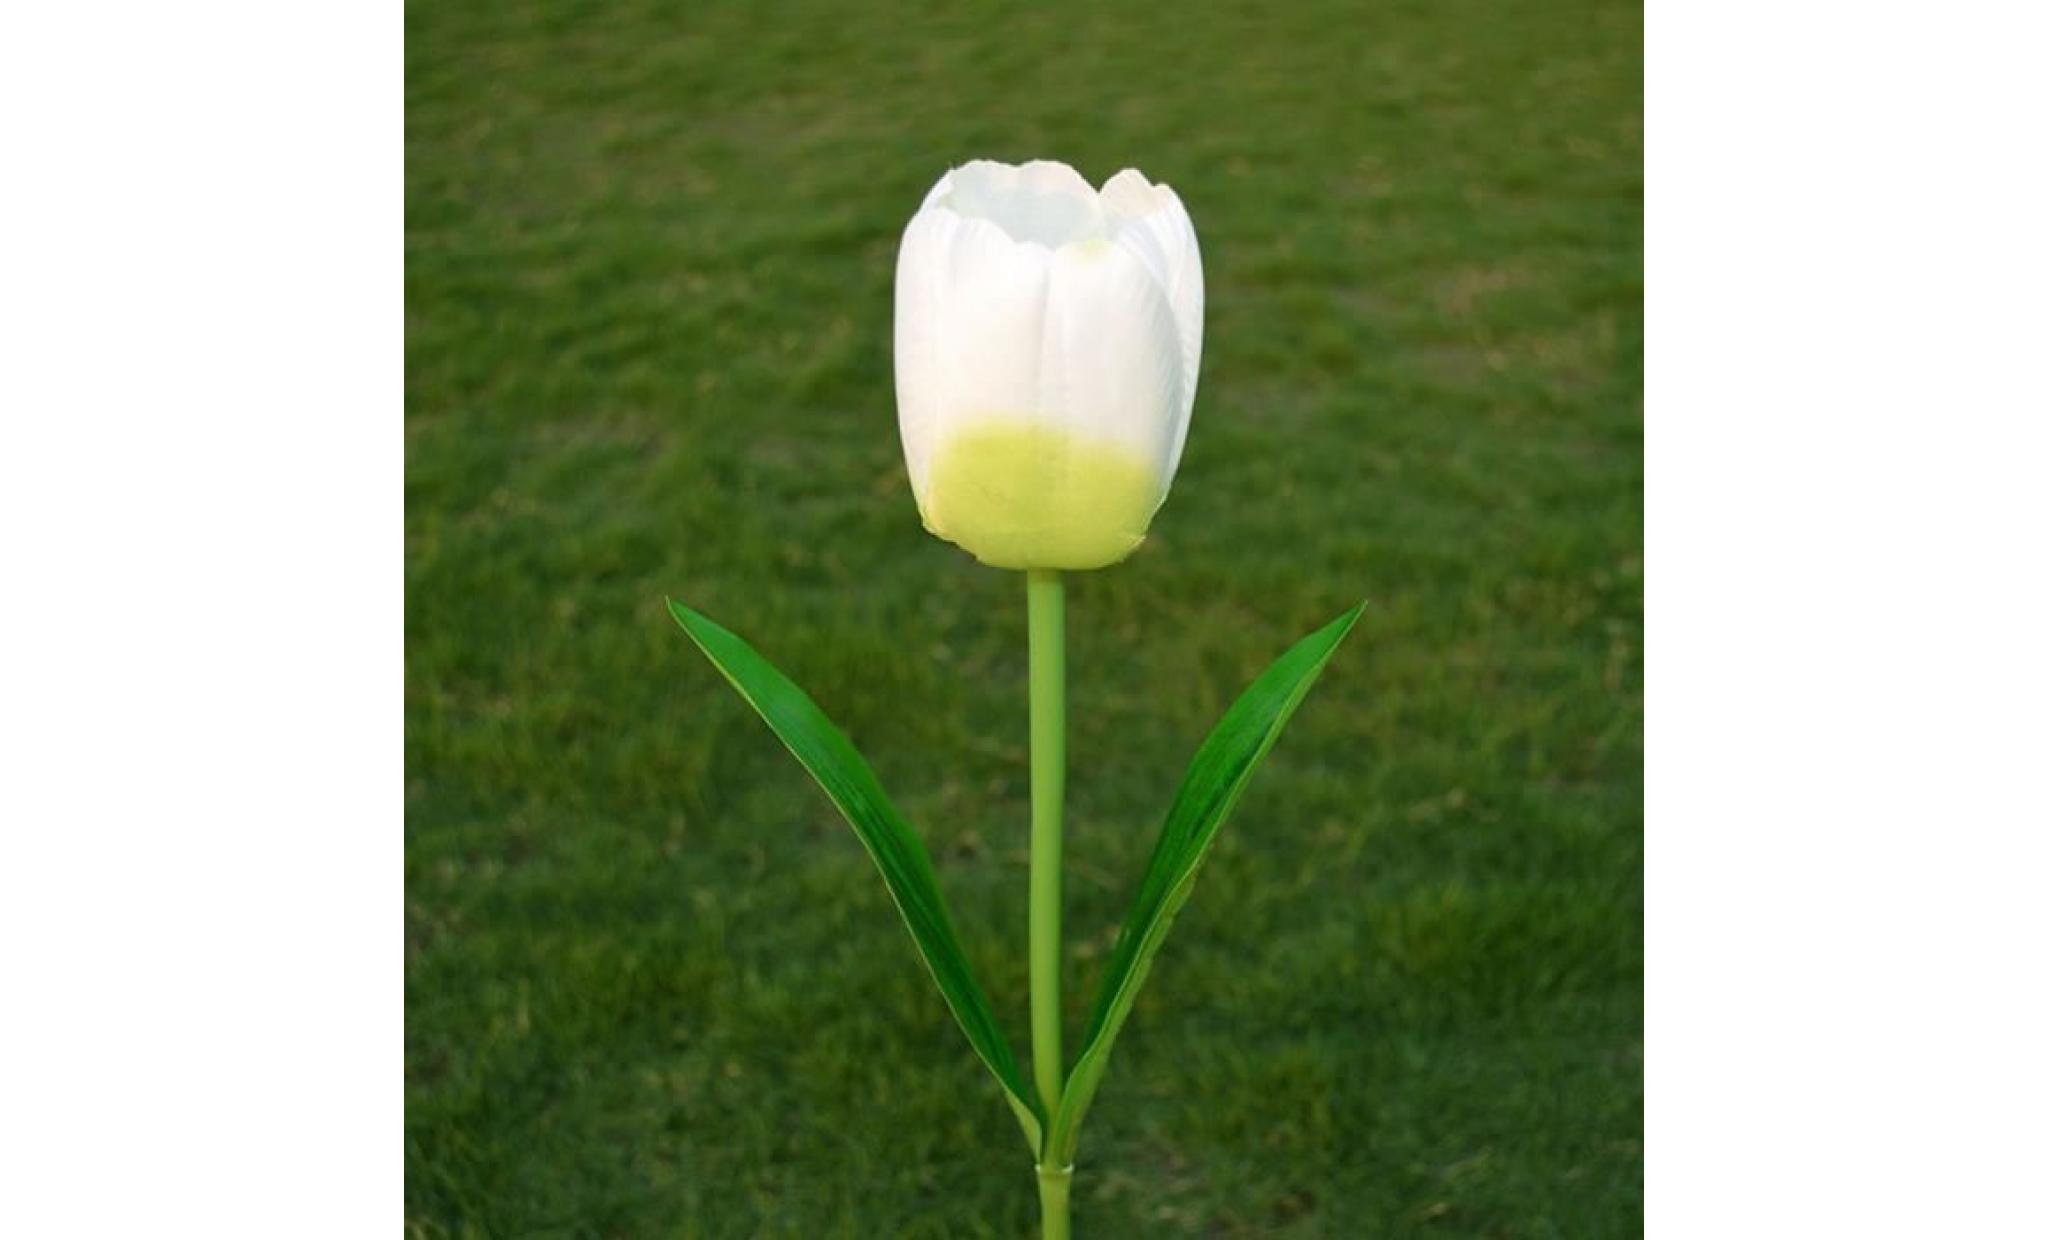 borne solaire 1 tête solaire led lampe décorative extérieure de pelouse 1 tête tulipe fleur lumière #la 114 pas cher